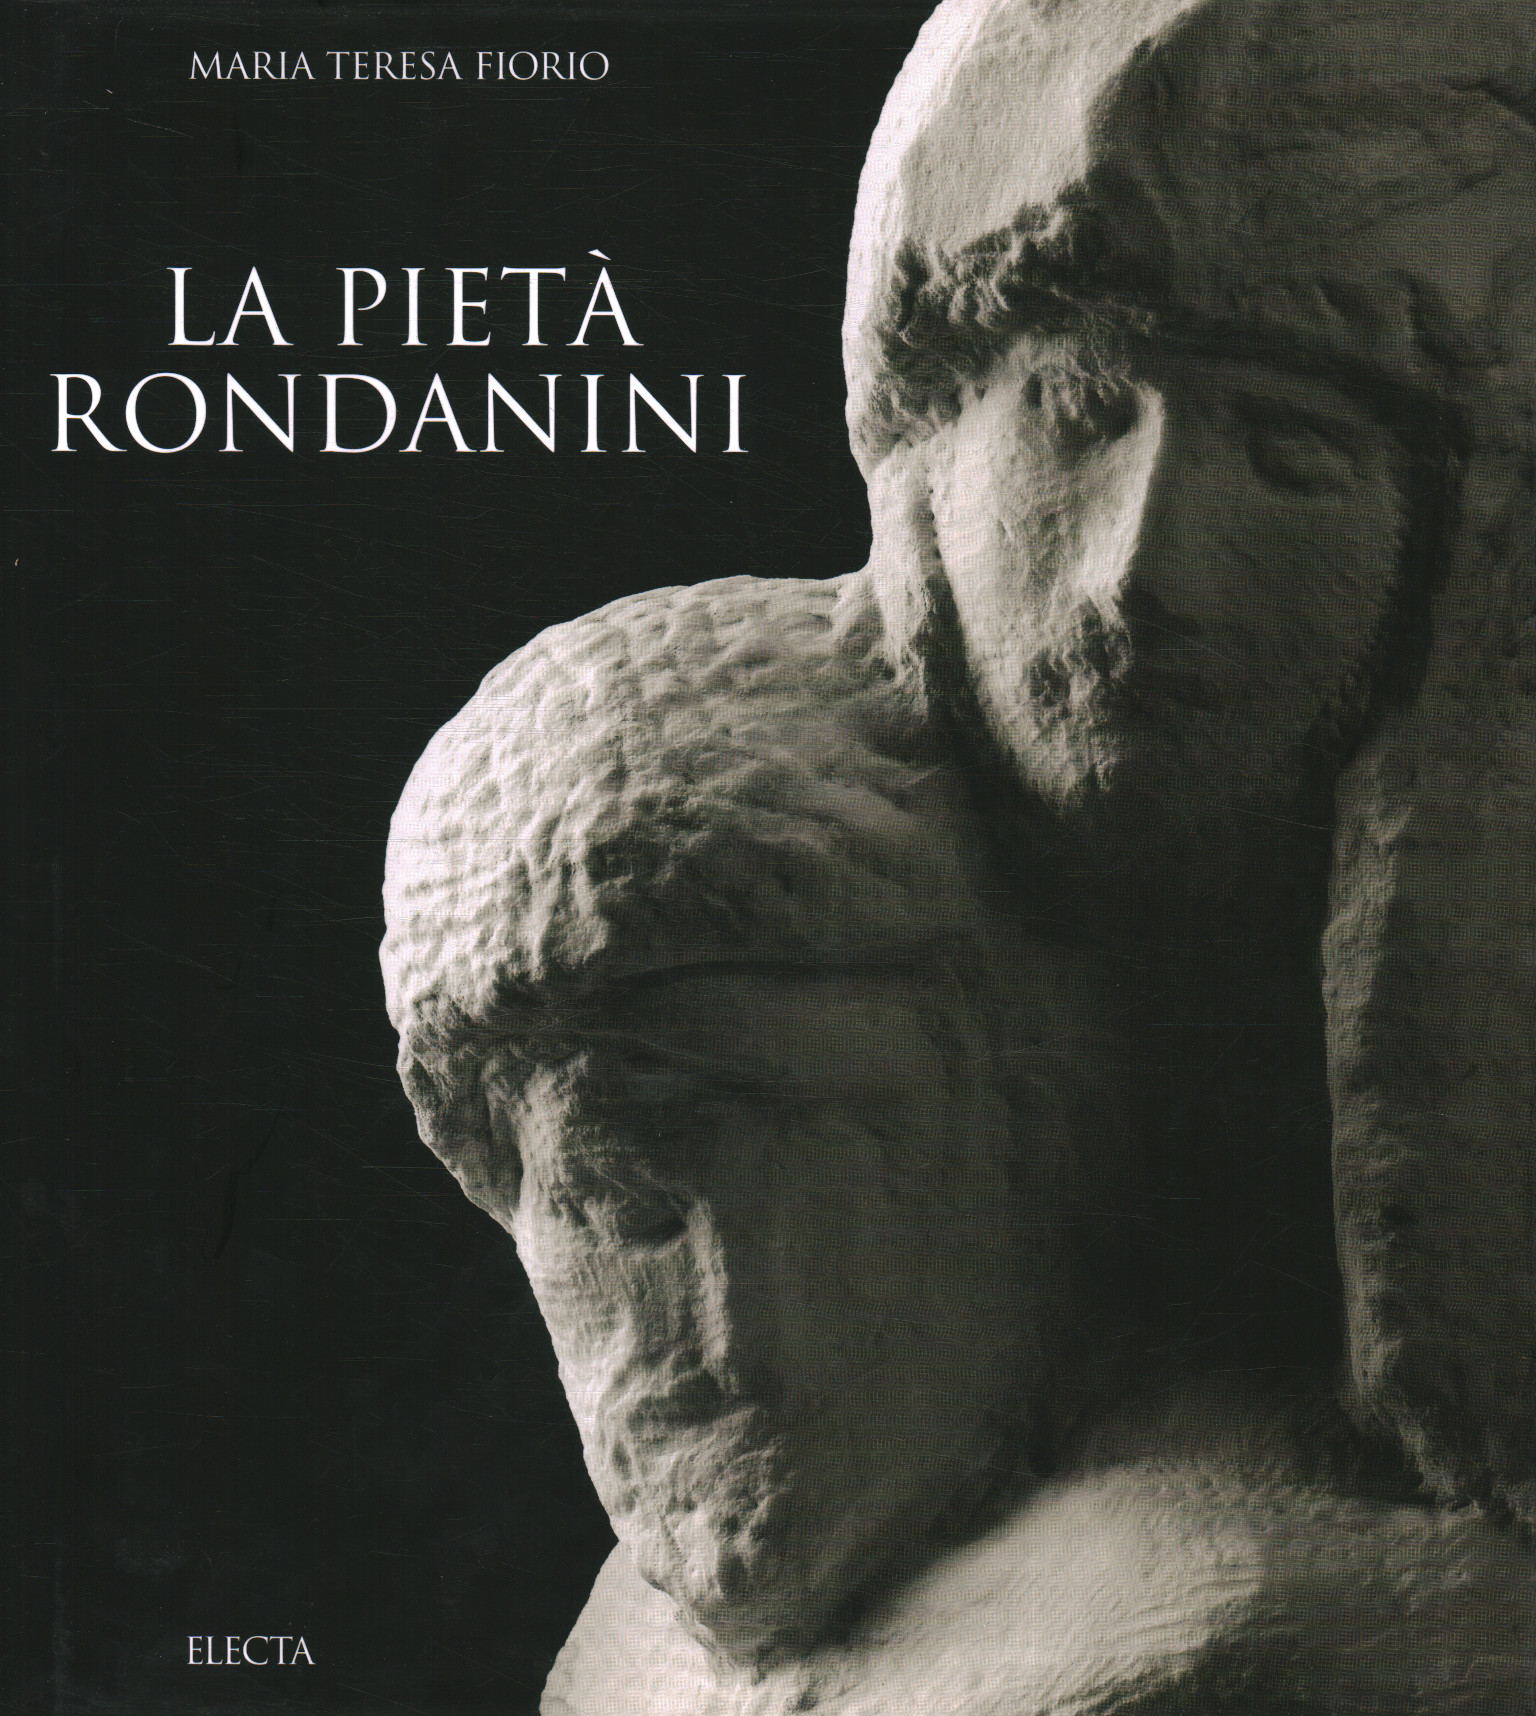 The Rondanini Pieta